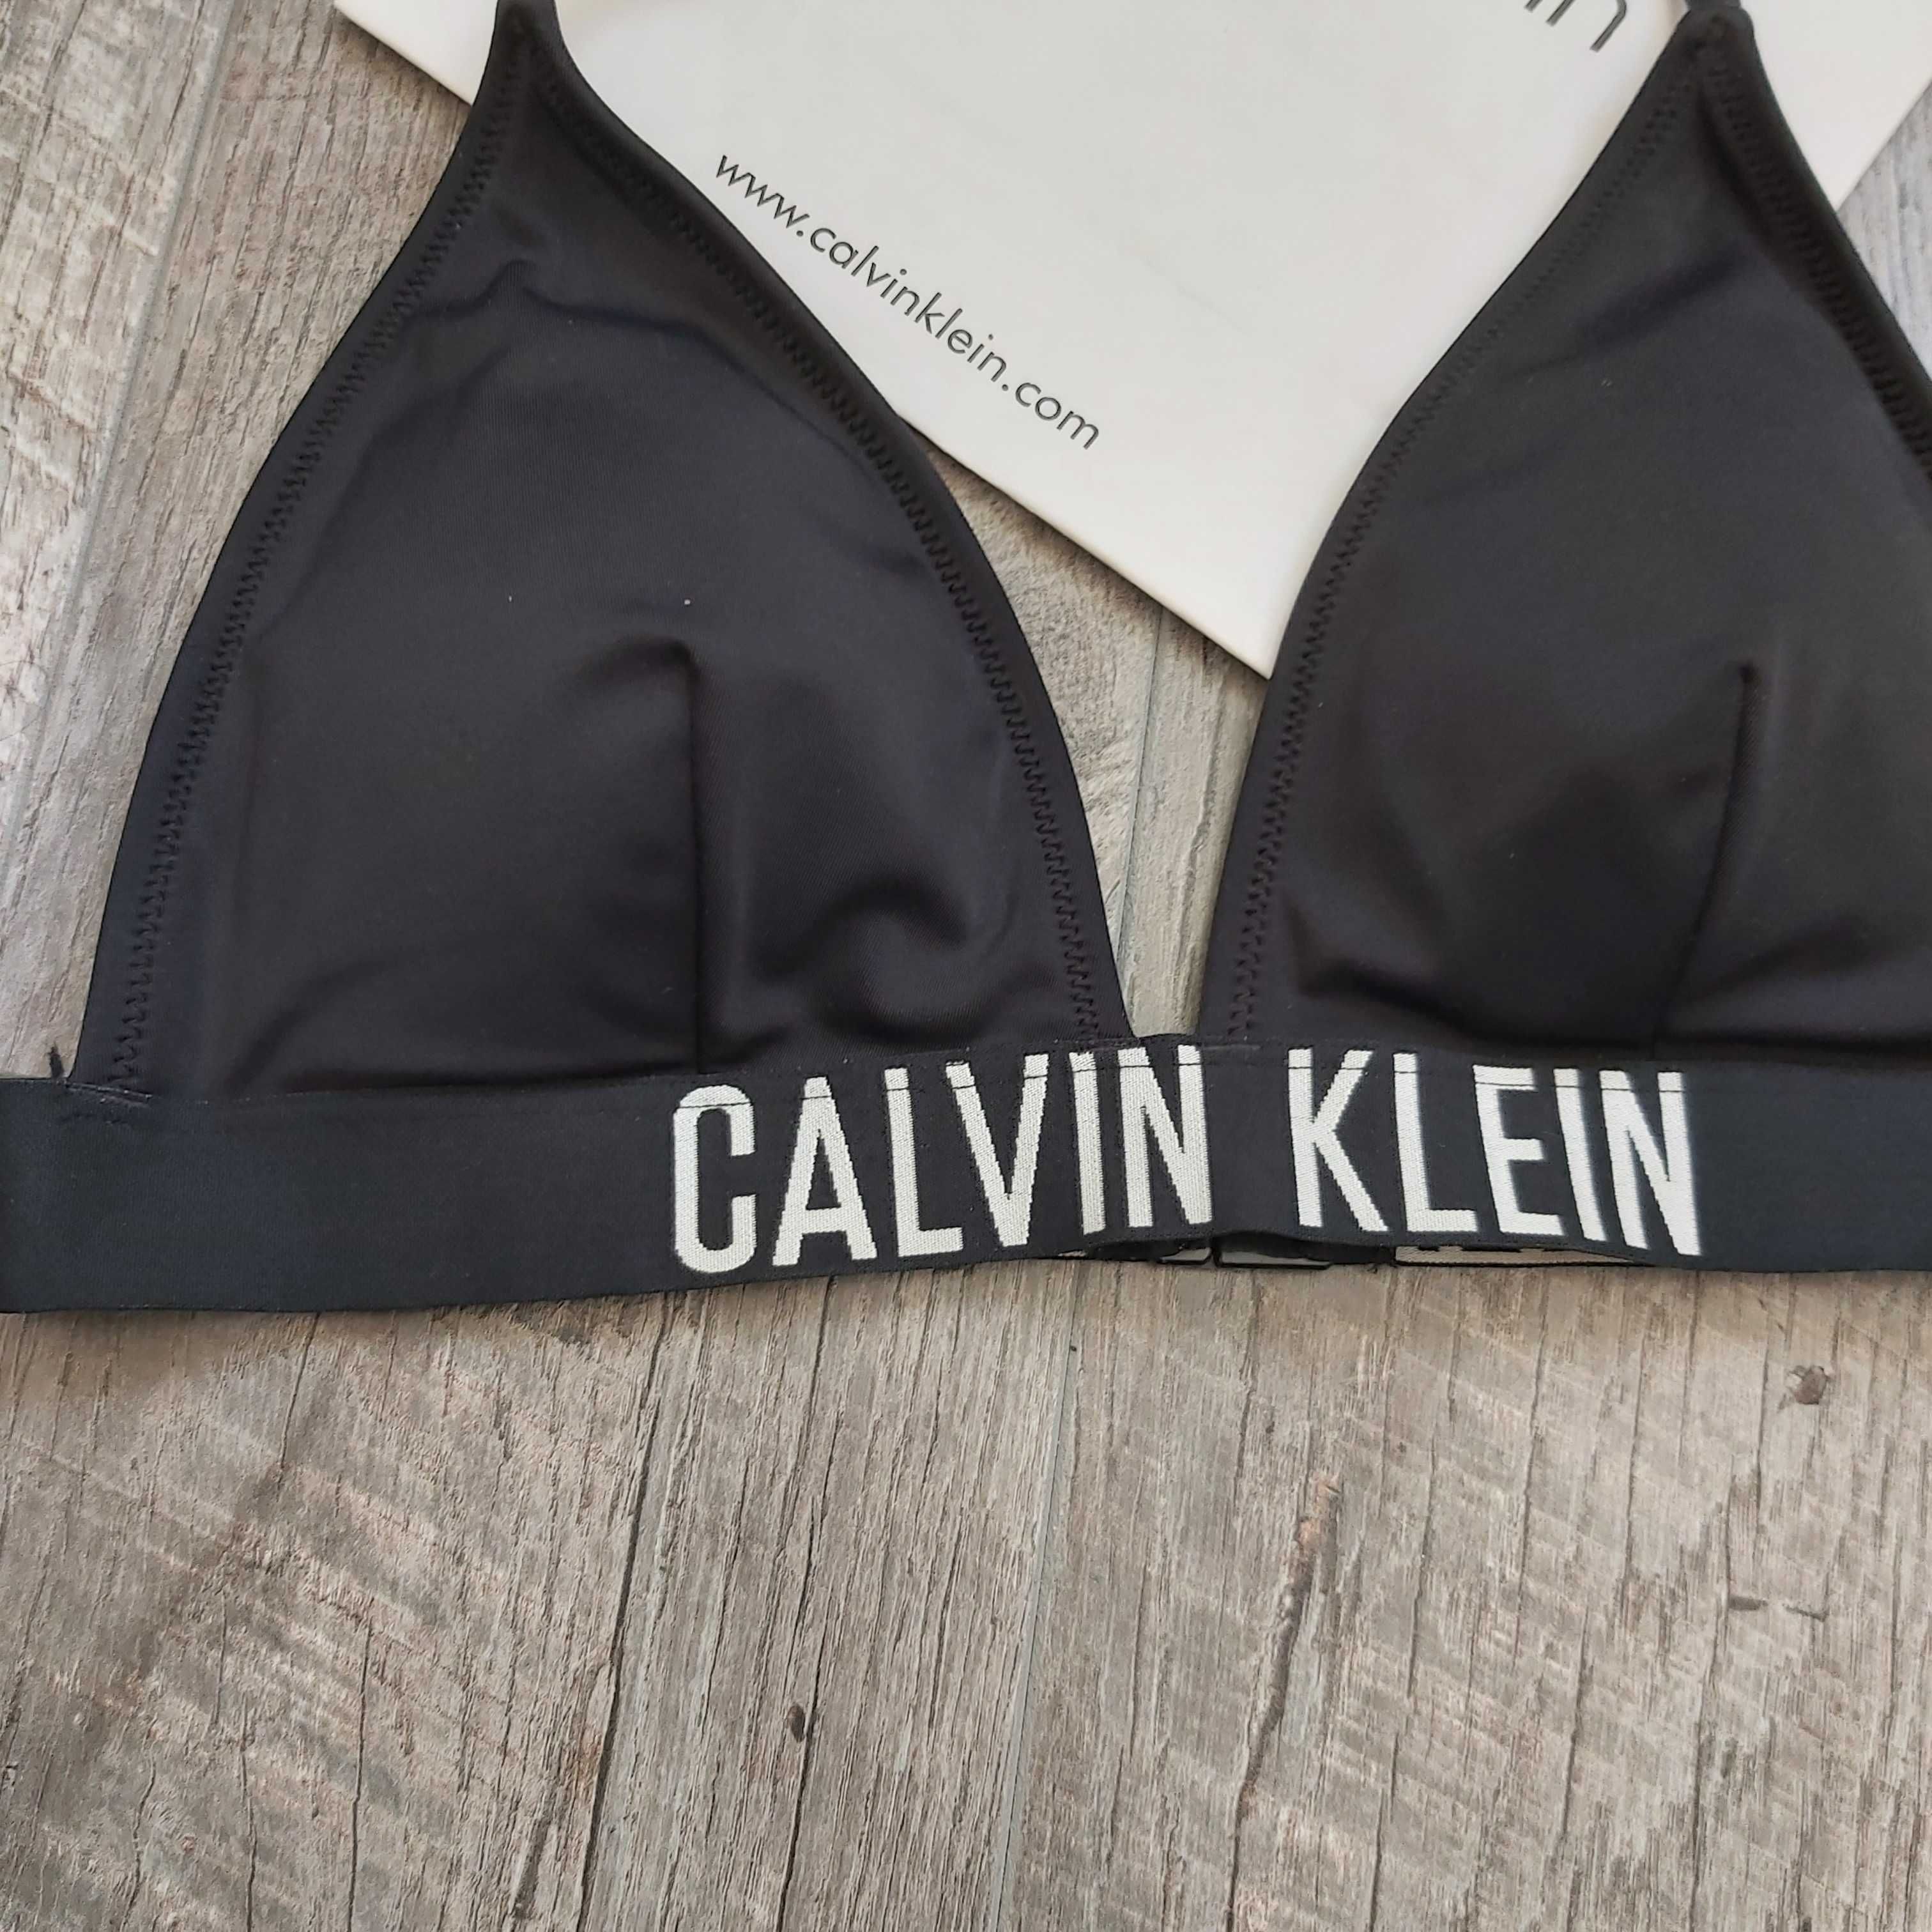 Calvin Klein biustonosz kąpielowy roz. M